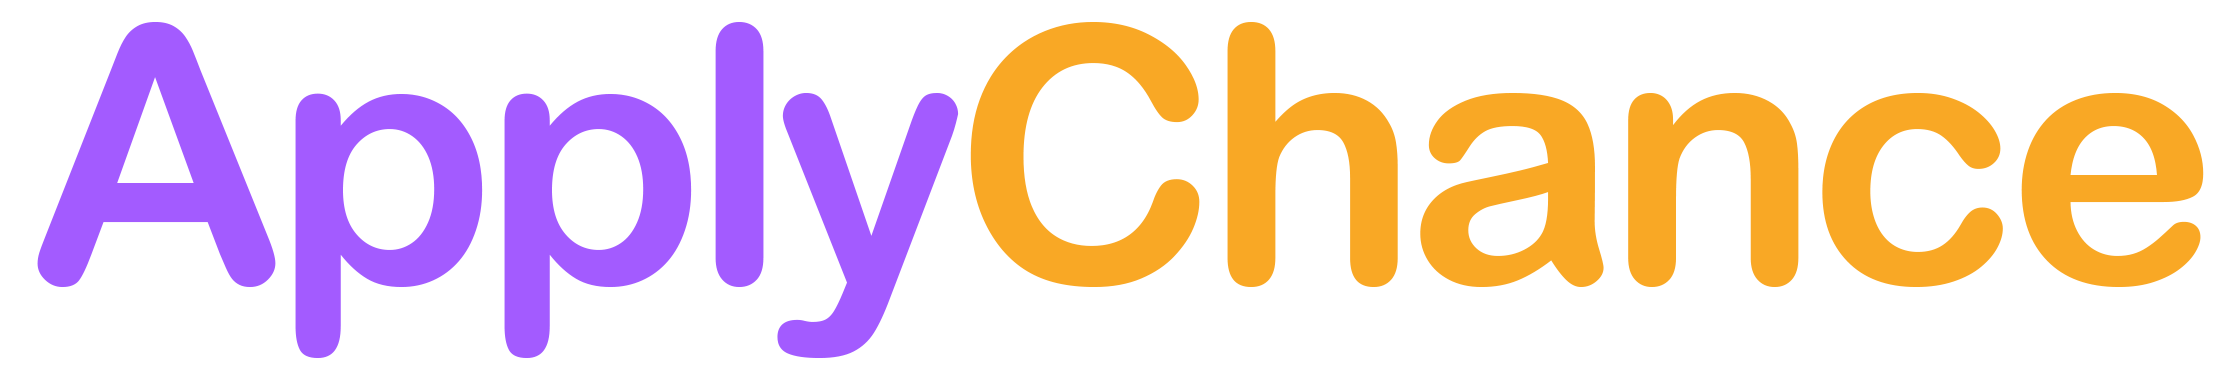 ApplyChance logo